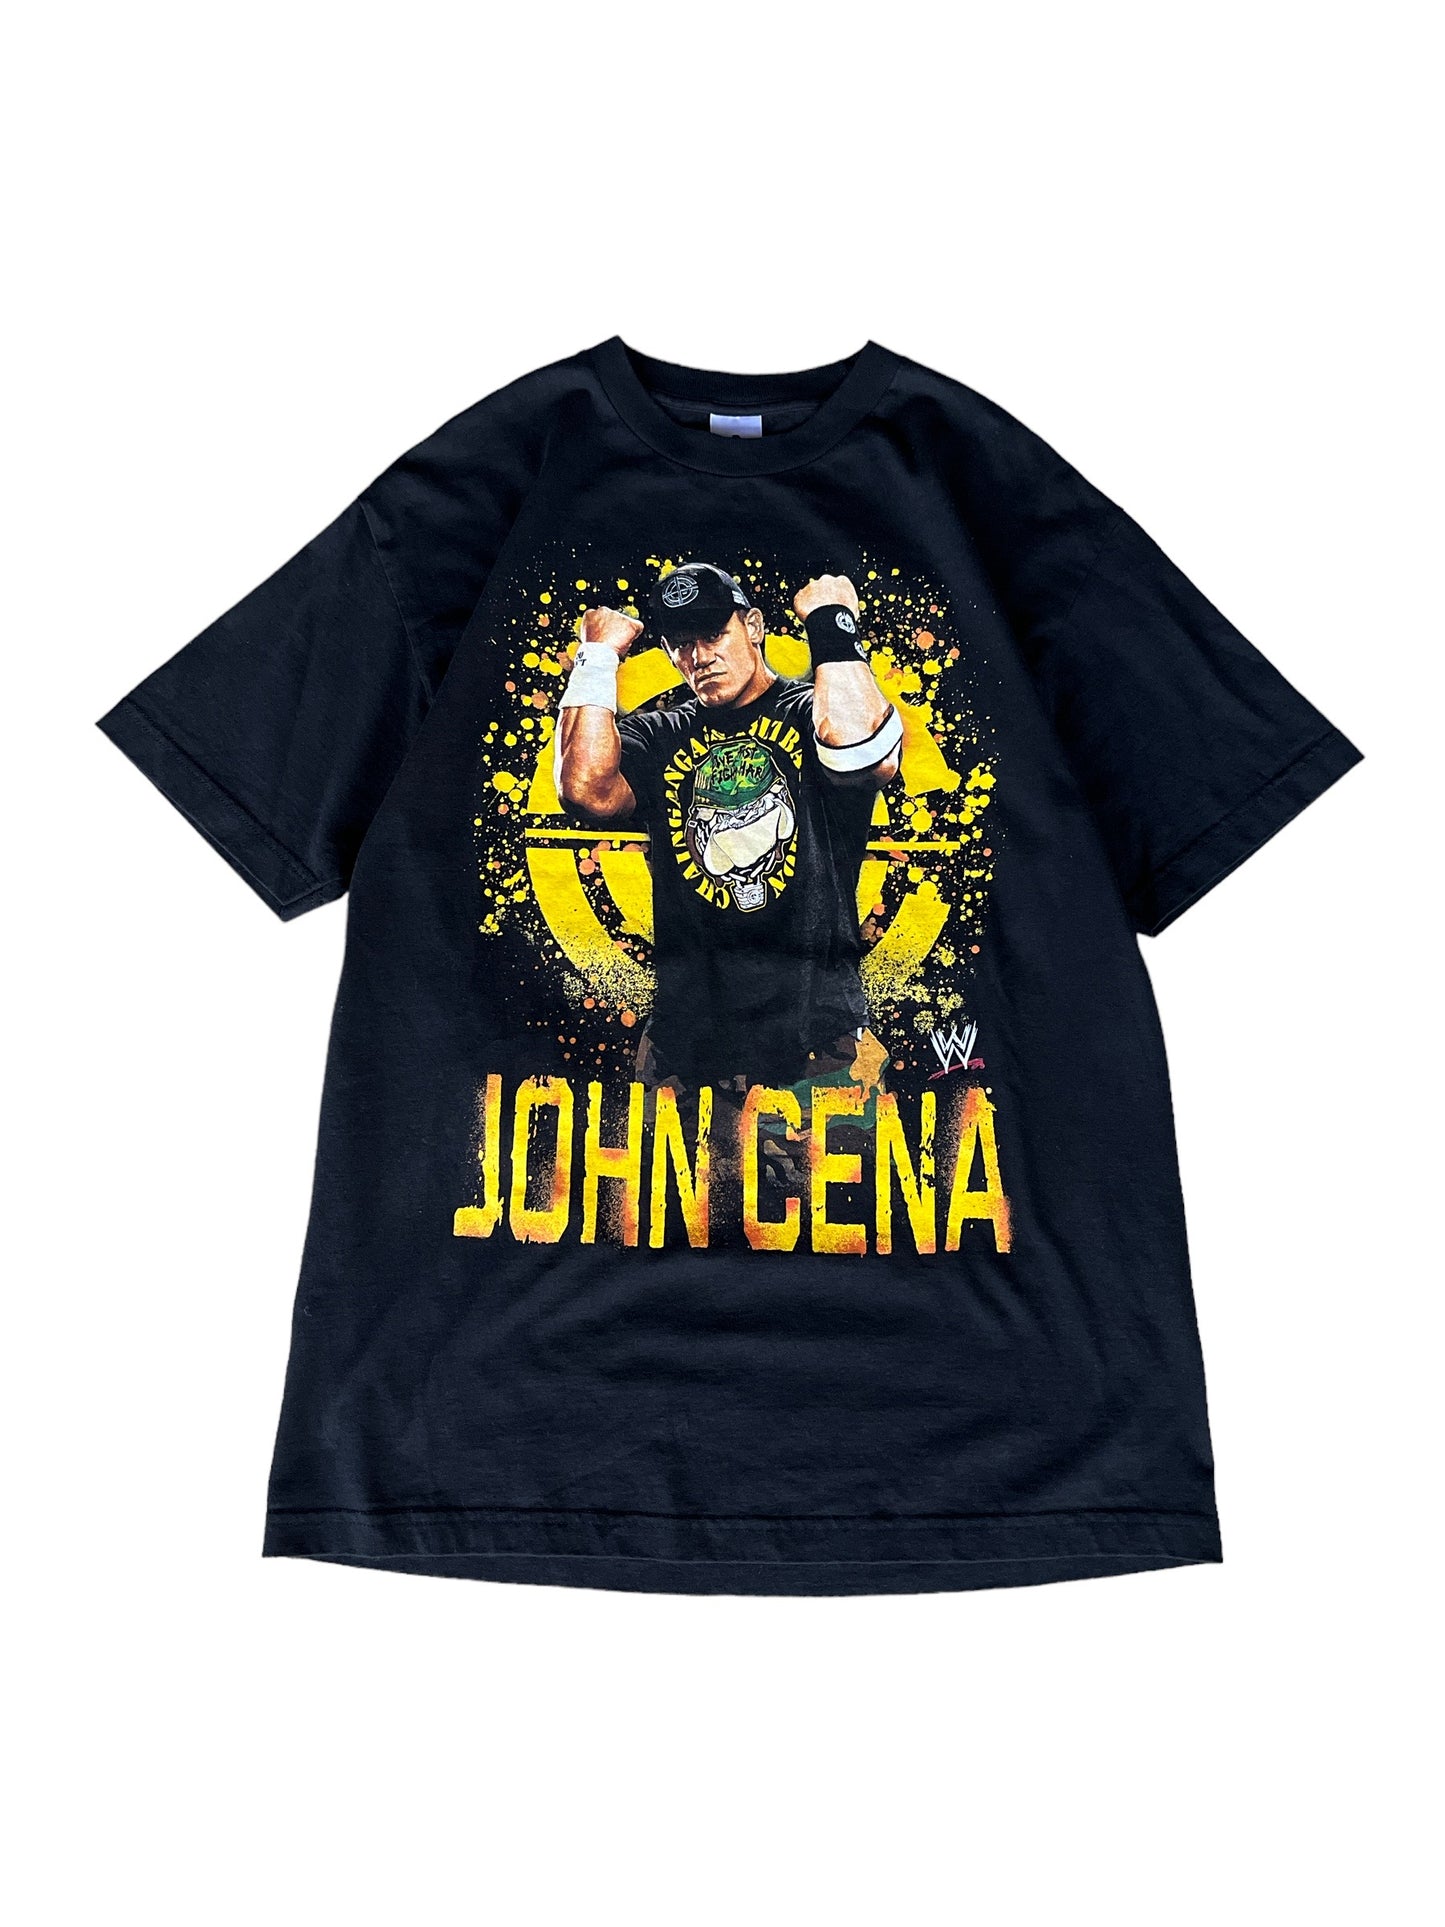 Vintage John Cena Tee